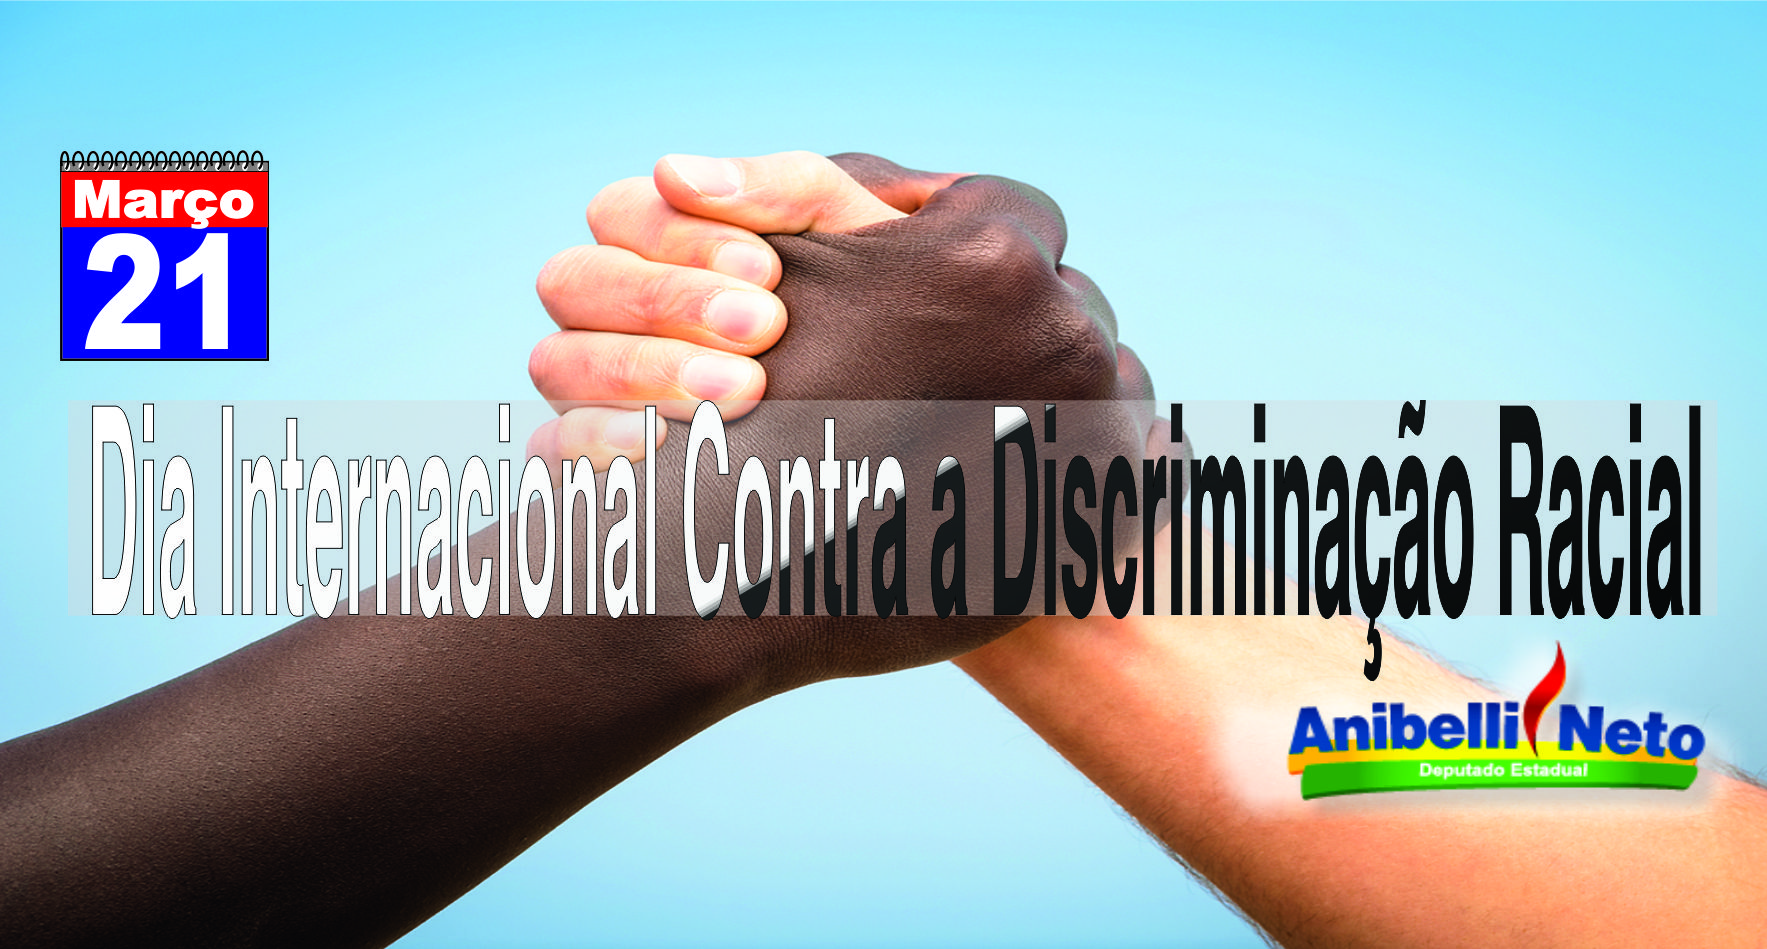 Dia Internacional Contra a Discriminação Racial